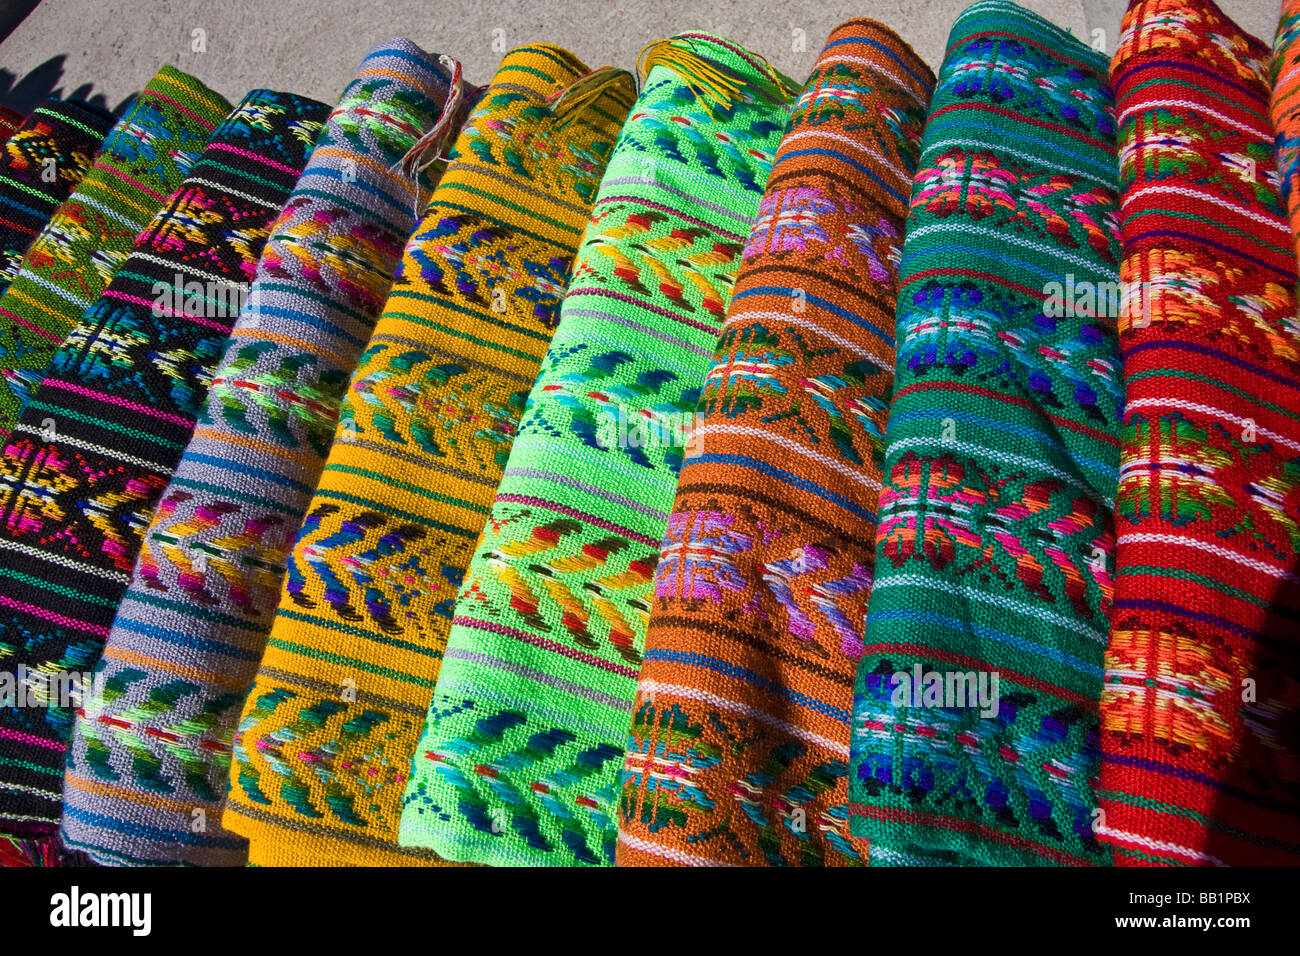 Tarahumara immagini e fotografie stock ad alta risoluzione - Alamy